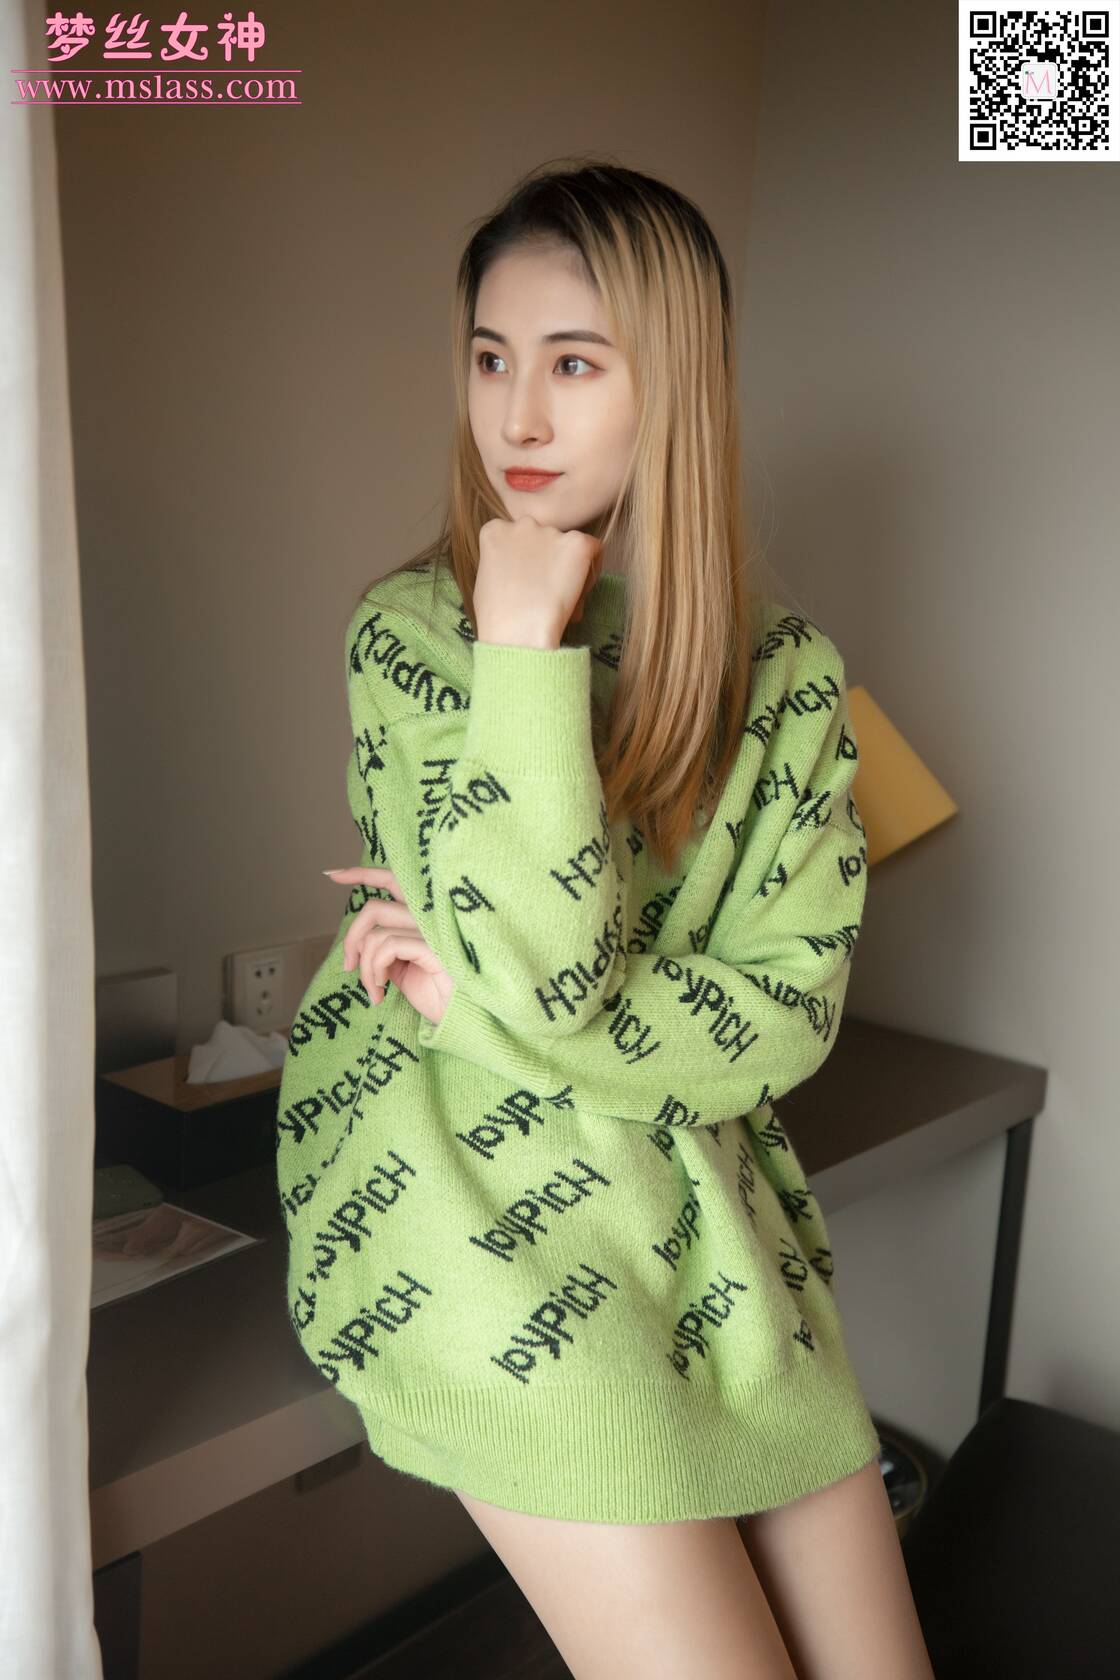 [MSLASS梦丝女神] 2019.11.27《小允儿 喜欢绿绿的衣服》